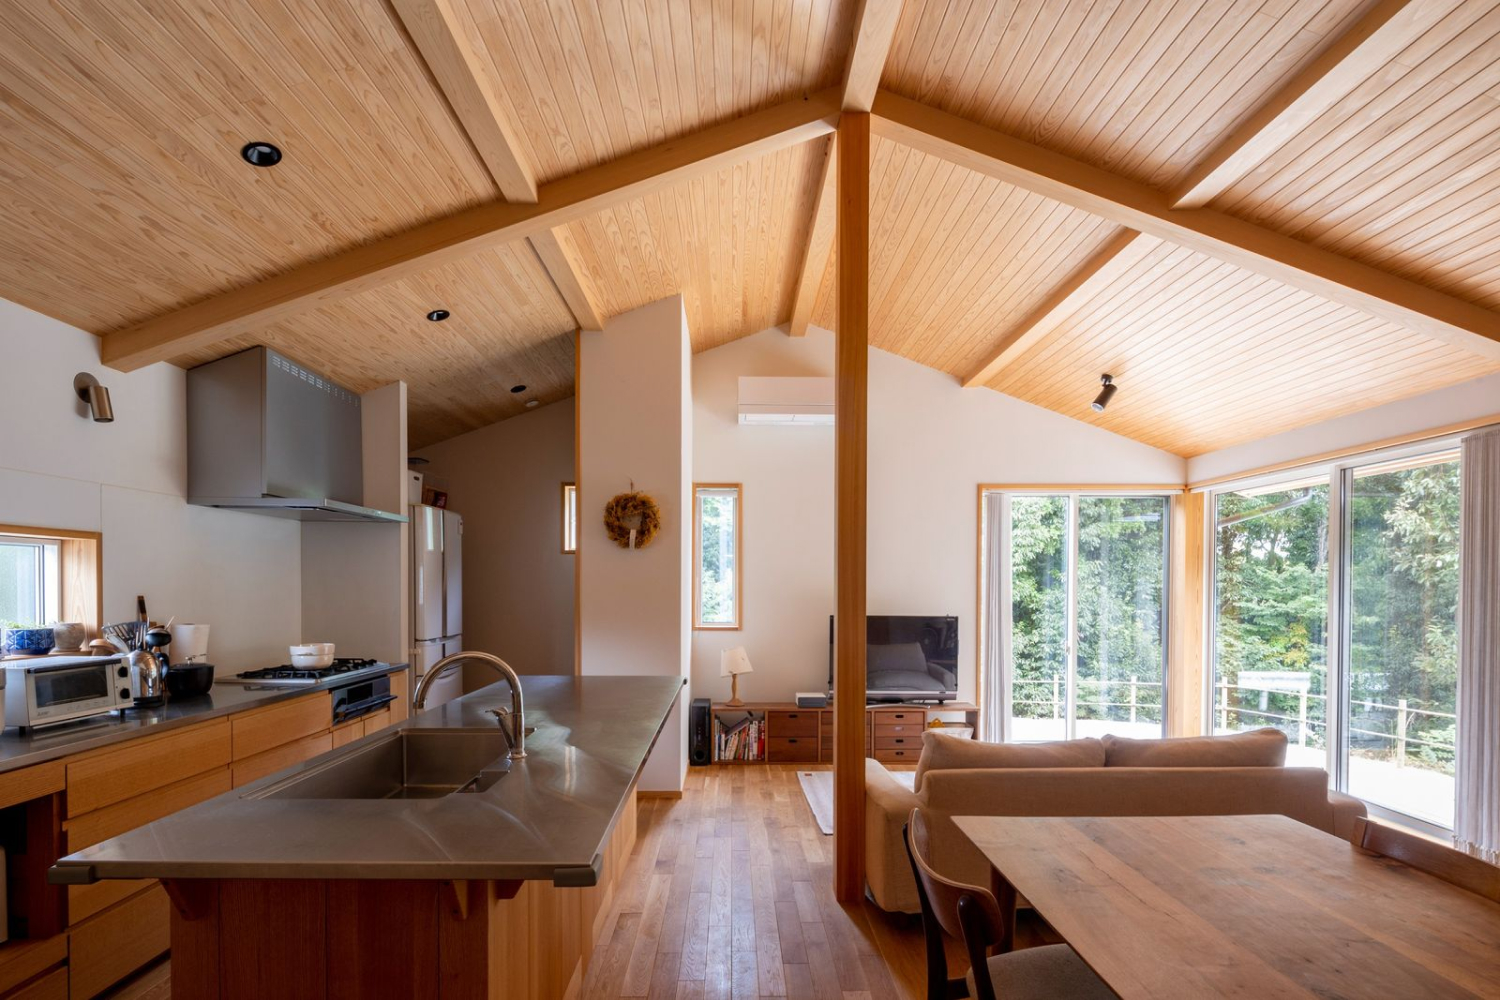 亀津さんがつくる家のコンセプトは木・土・風・光を感じられるシンプルで温かみのある家。